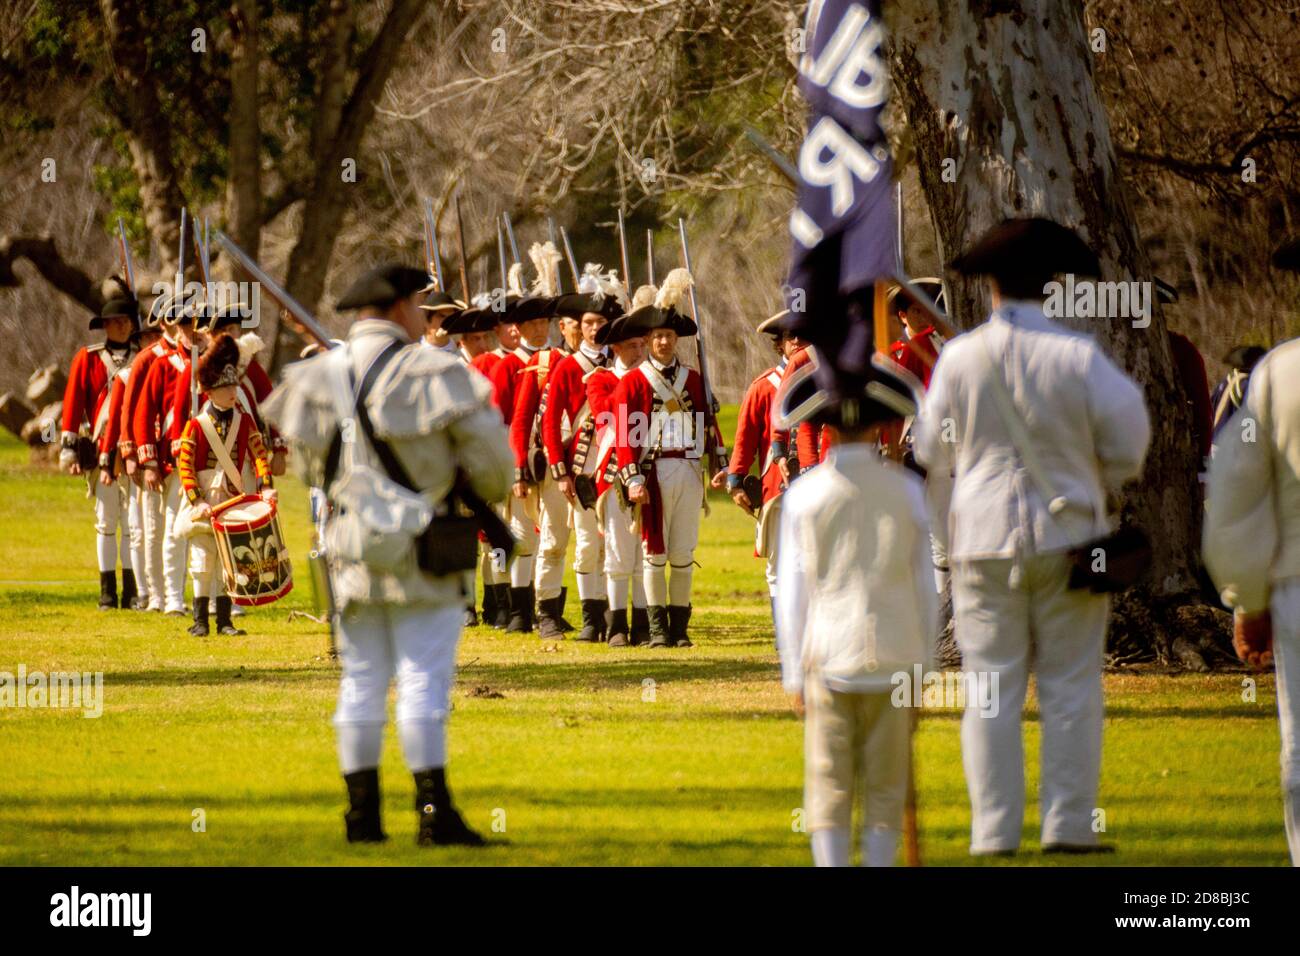 Mit einer Freiheitsflagge konfrontieren Schauspieler, die amerikanische Rebellen darstellen, Redcoats bei der historischen Nachstellung eines amerikanischen Revolutionskrieges in einem Huntingt Stockfoto